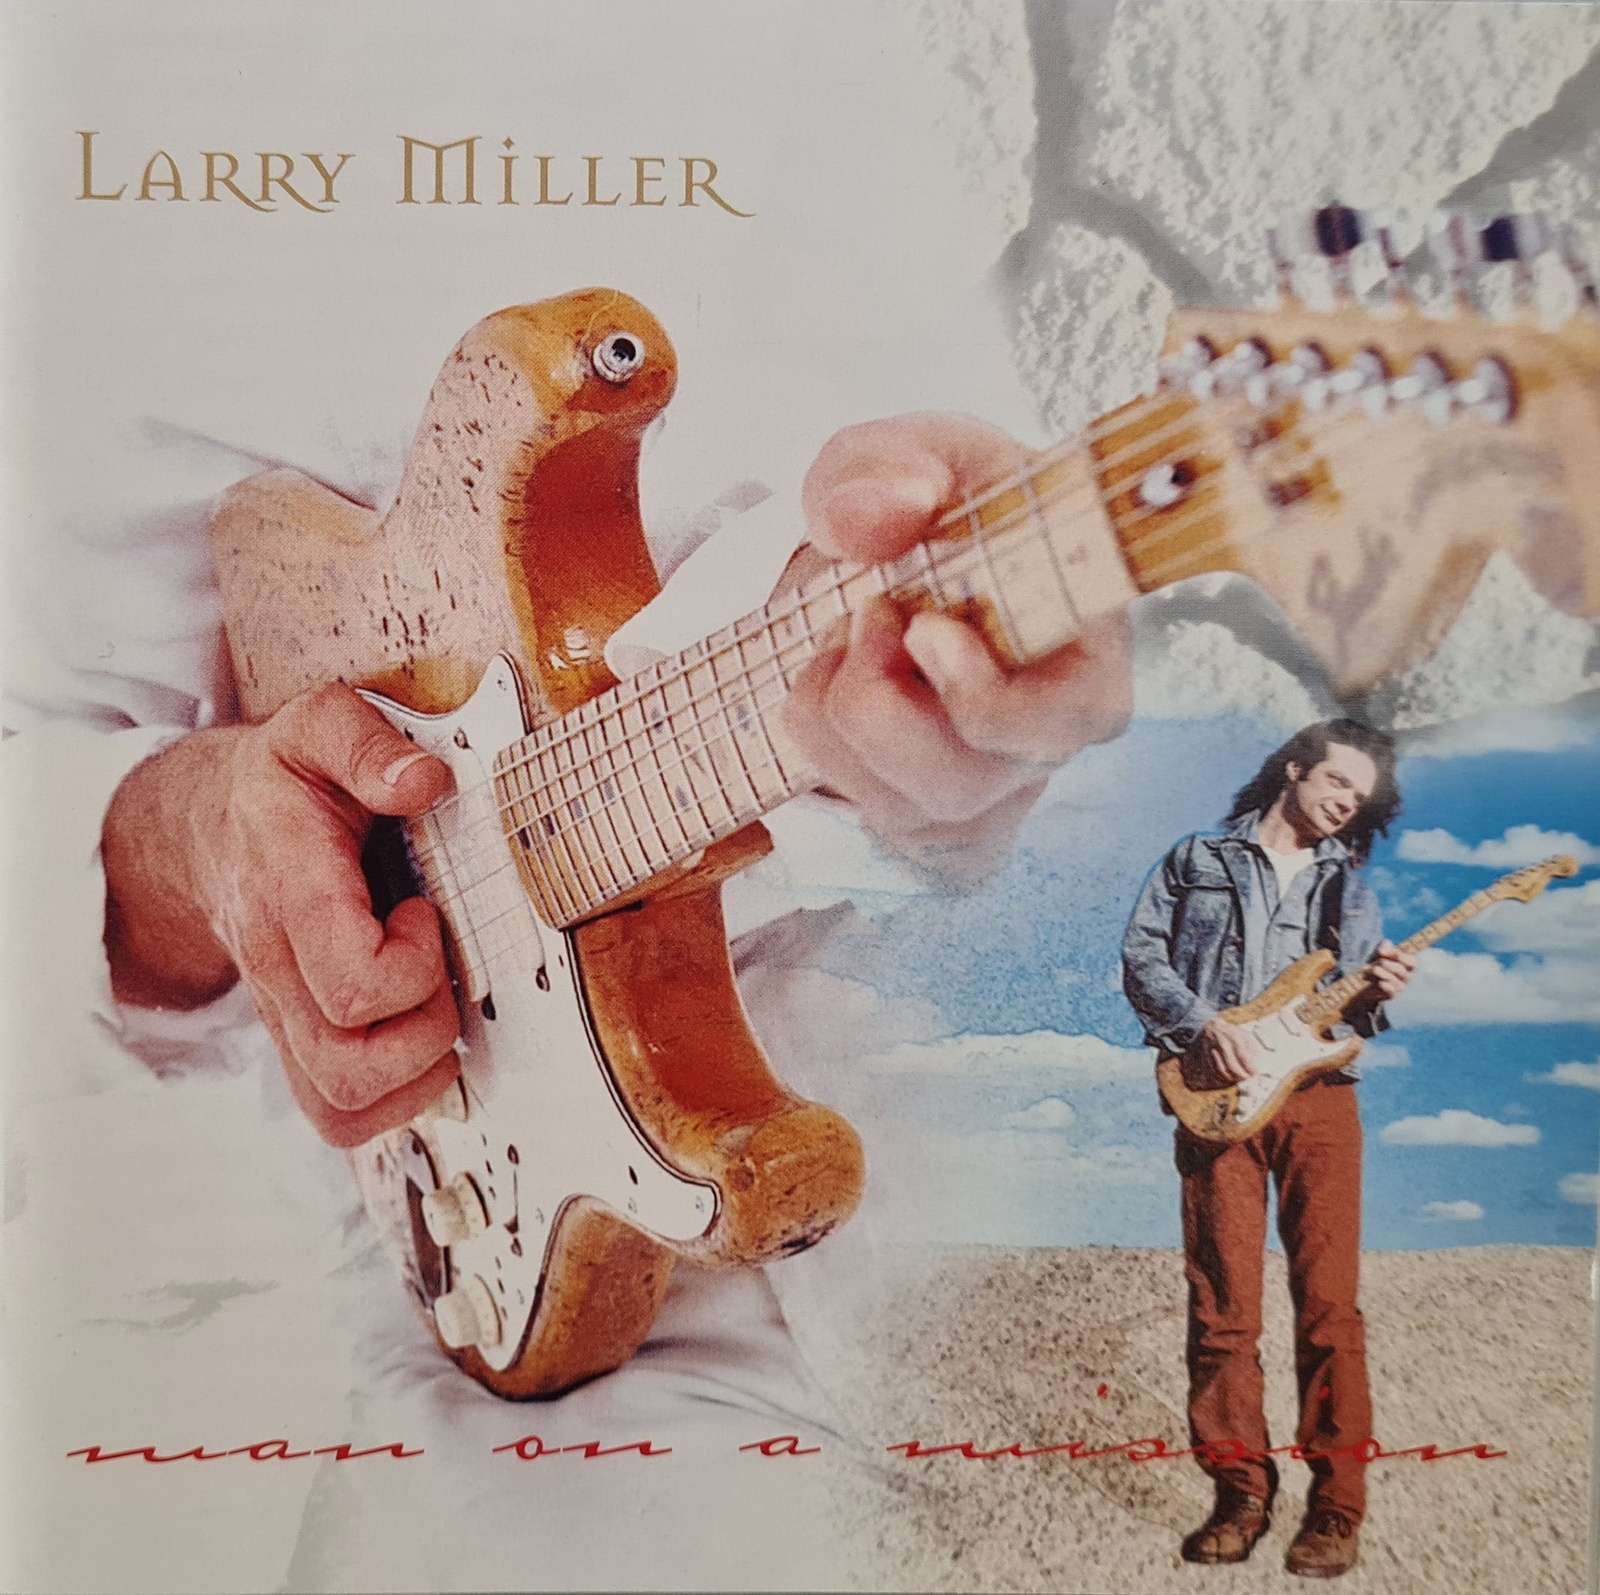 Larry Miller - Man on a Mission (CD)